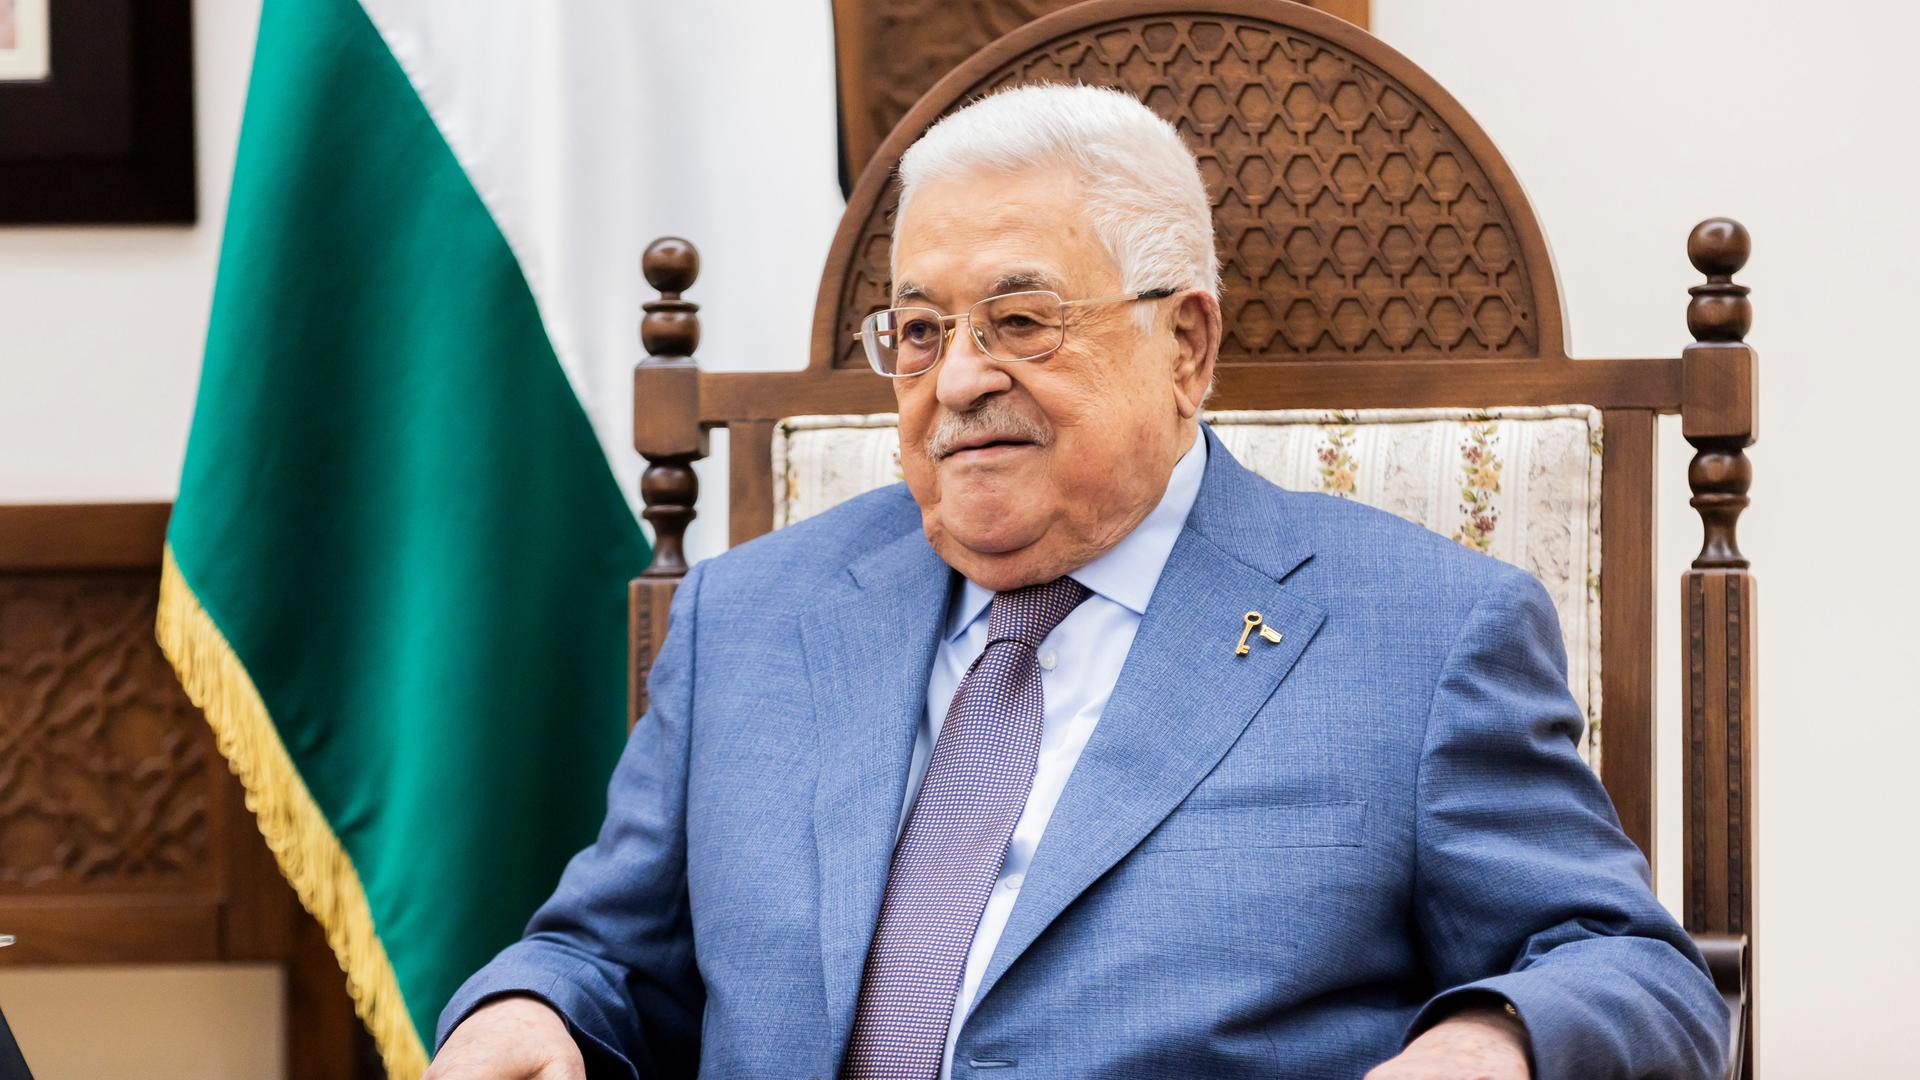 Nahost - Palästinensische Autonomiebehörde hat neue Regierung